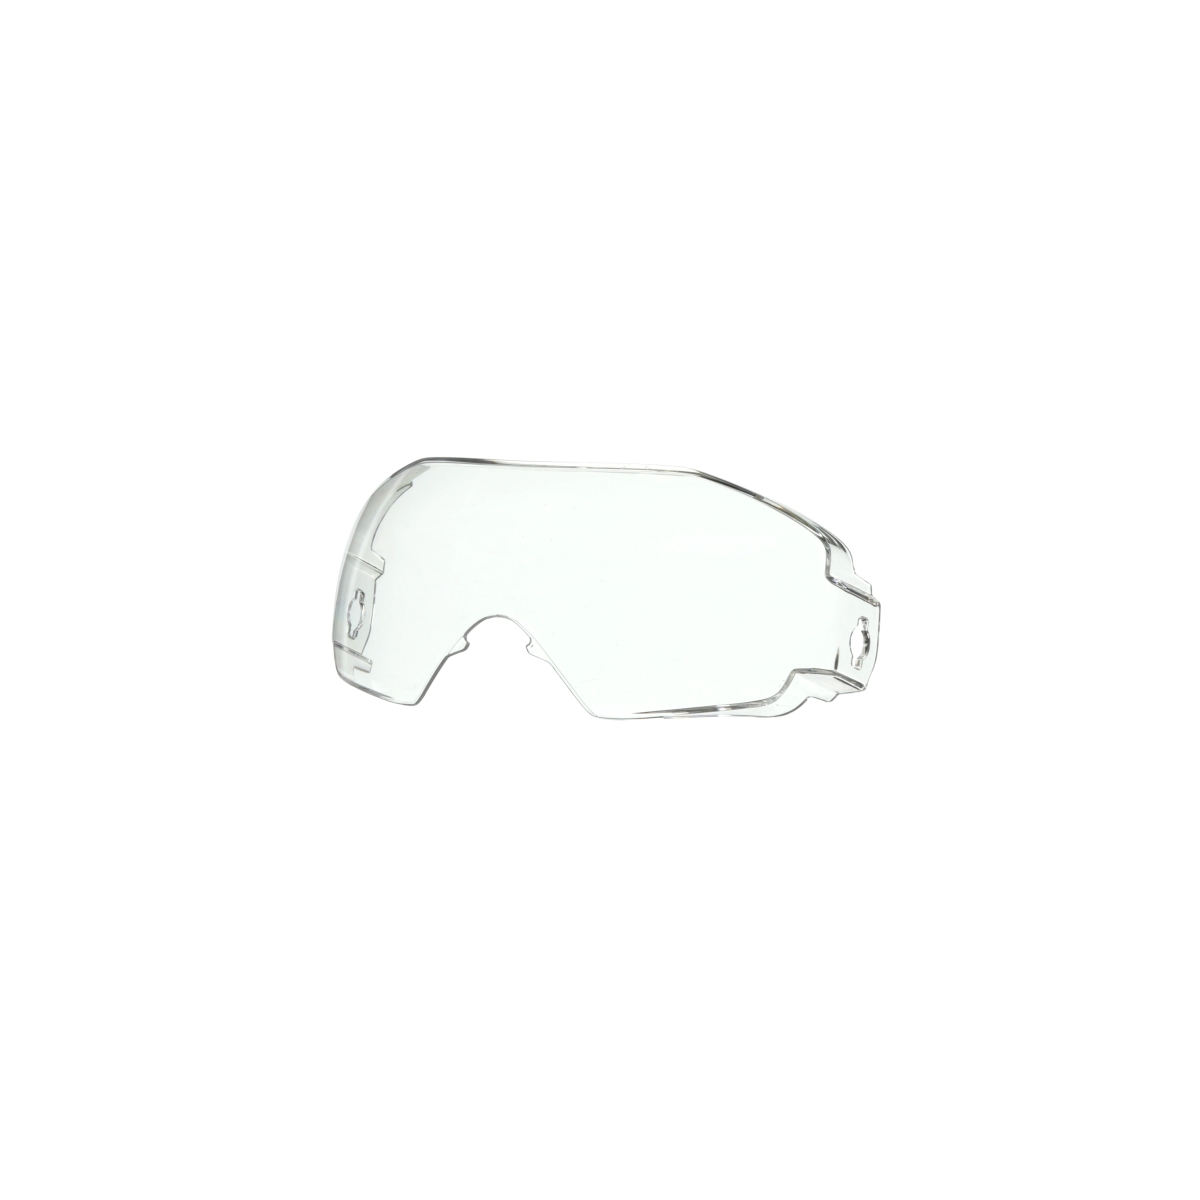 3M GoggleGear 6000 Vollsichtbrille, klappbare graue Ersatzscheibe mit Schutzstufe IR 5.0, Antikratz-Beschichtung, GG6050AS-CLENS